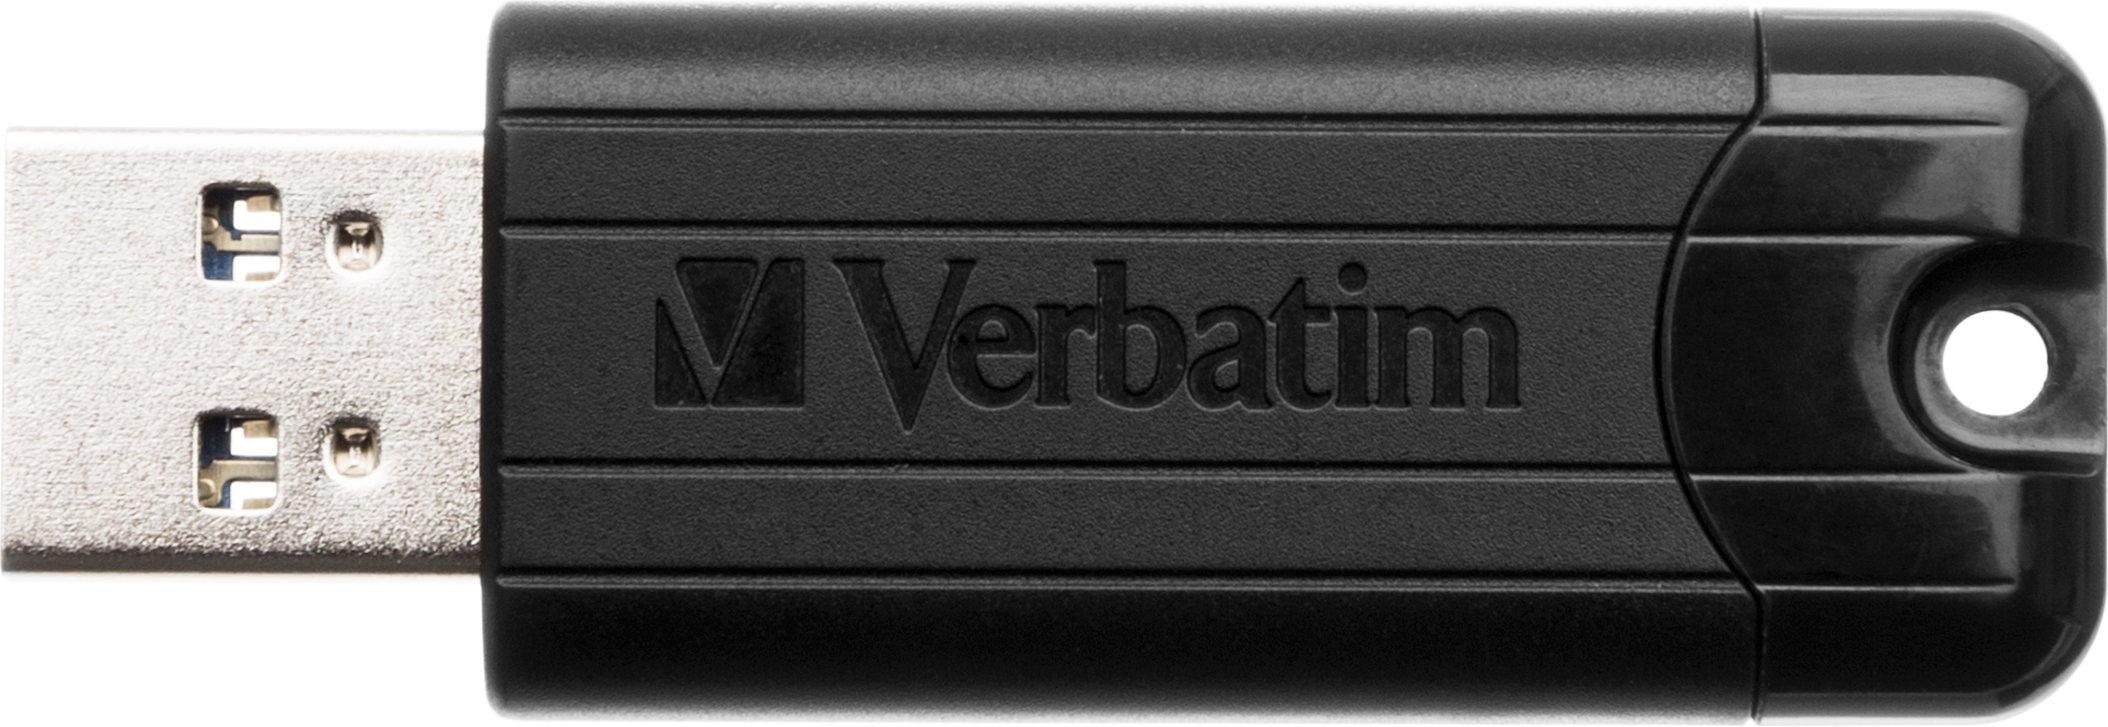 Verbatim  VERBATIM Store n Go Drive 256GB 49320 USB 3.0 black 